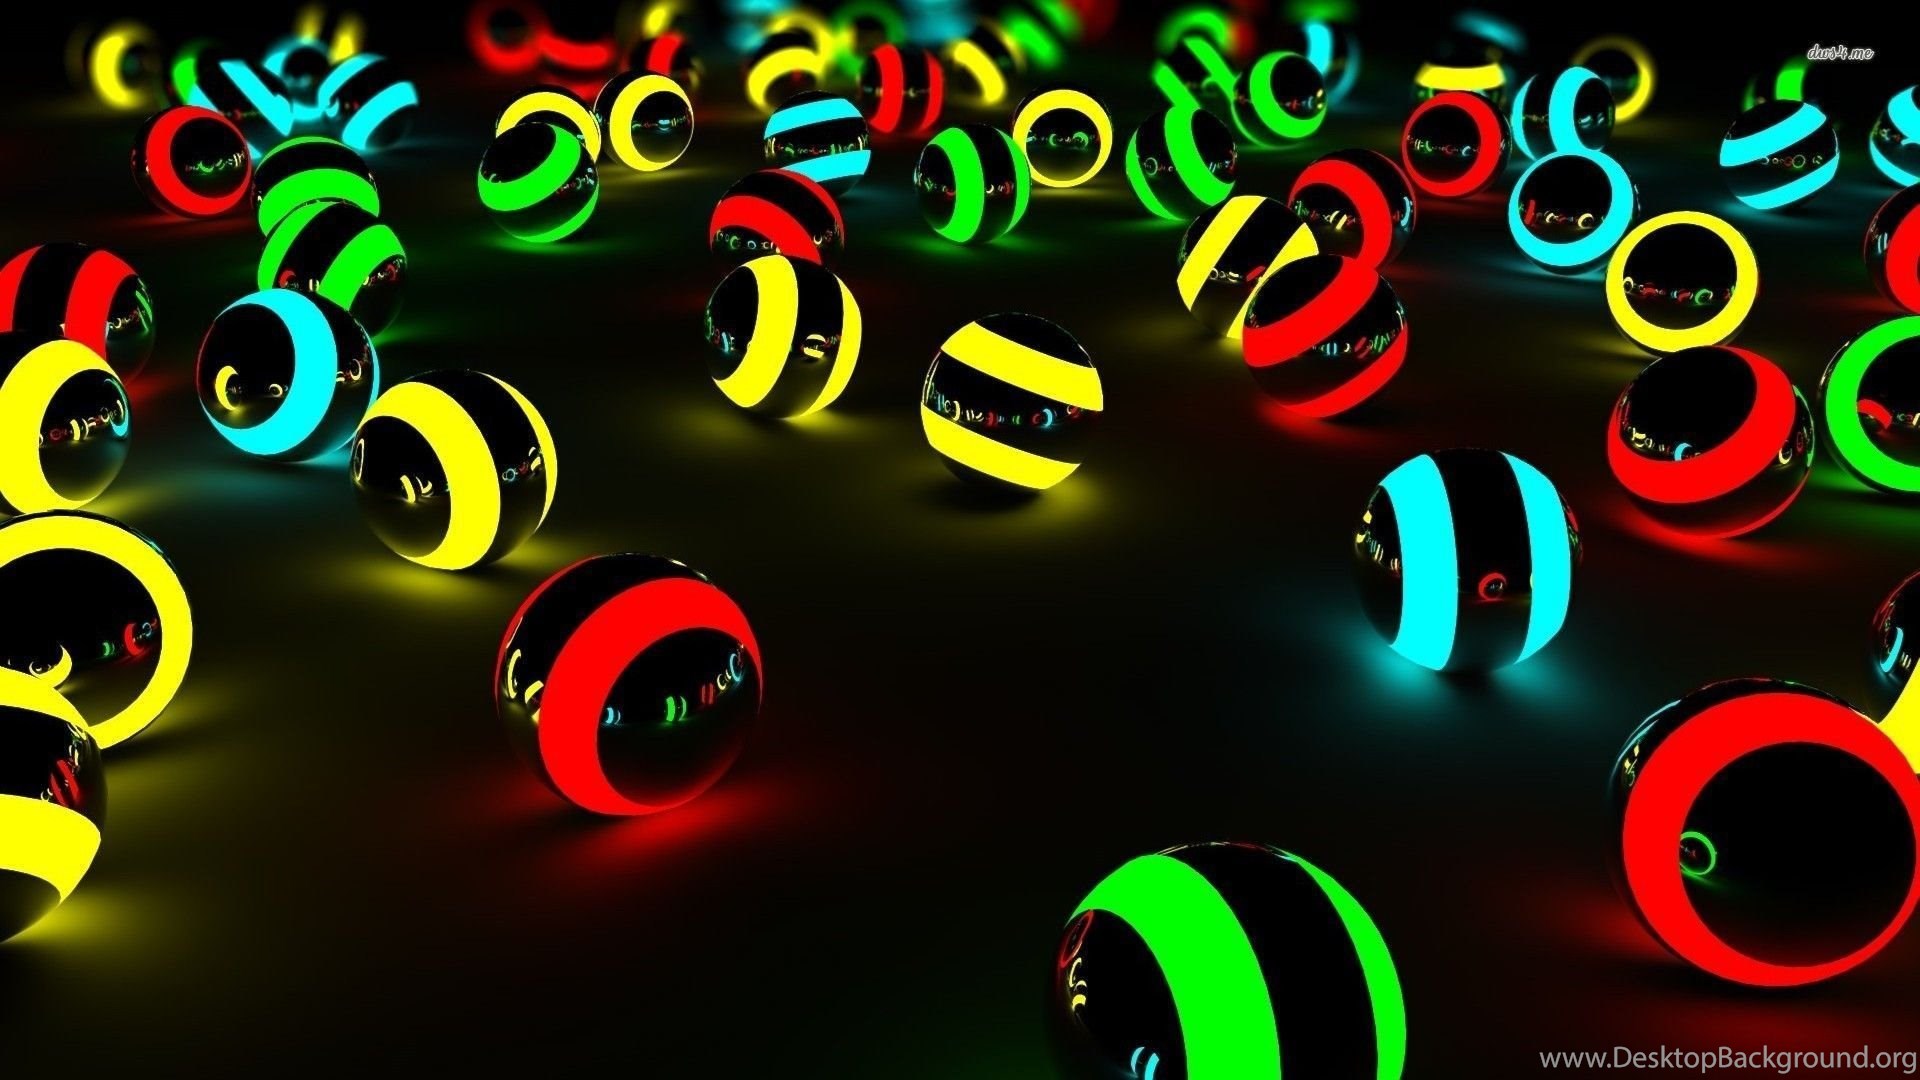 Neon Spheres Wallpapers 3D Wallpapers Desktop Background